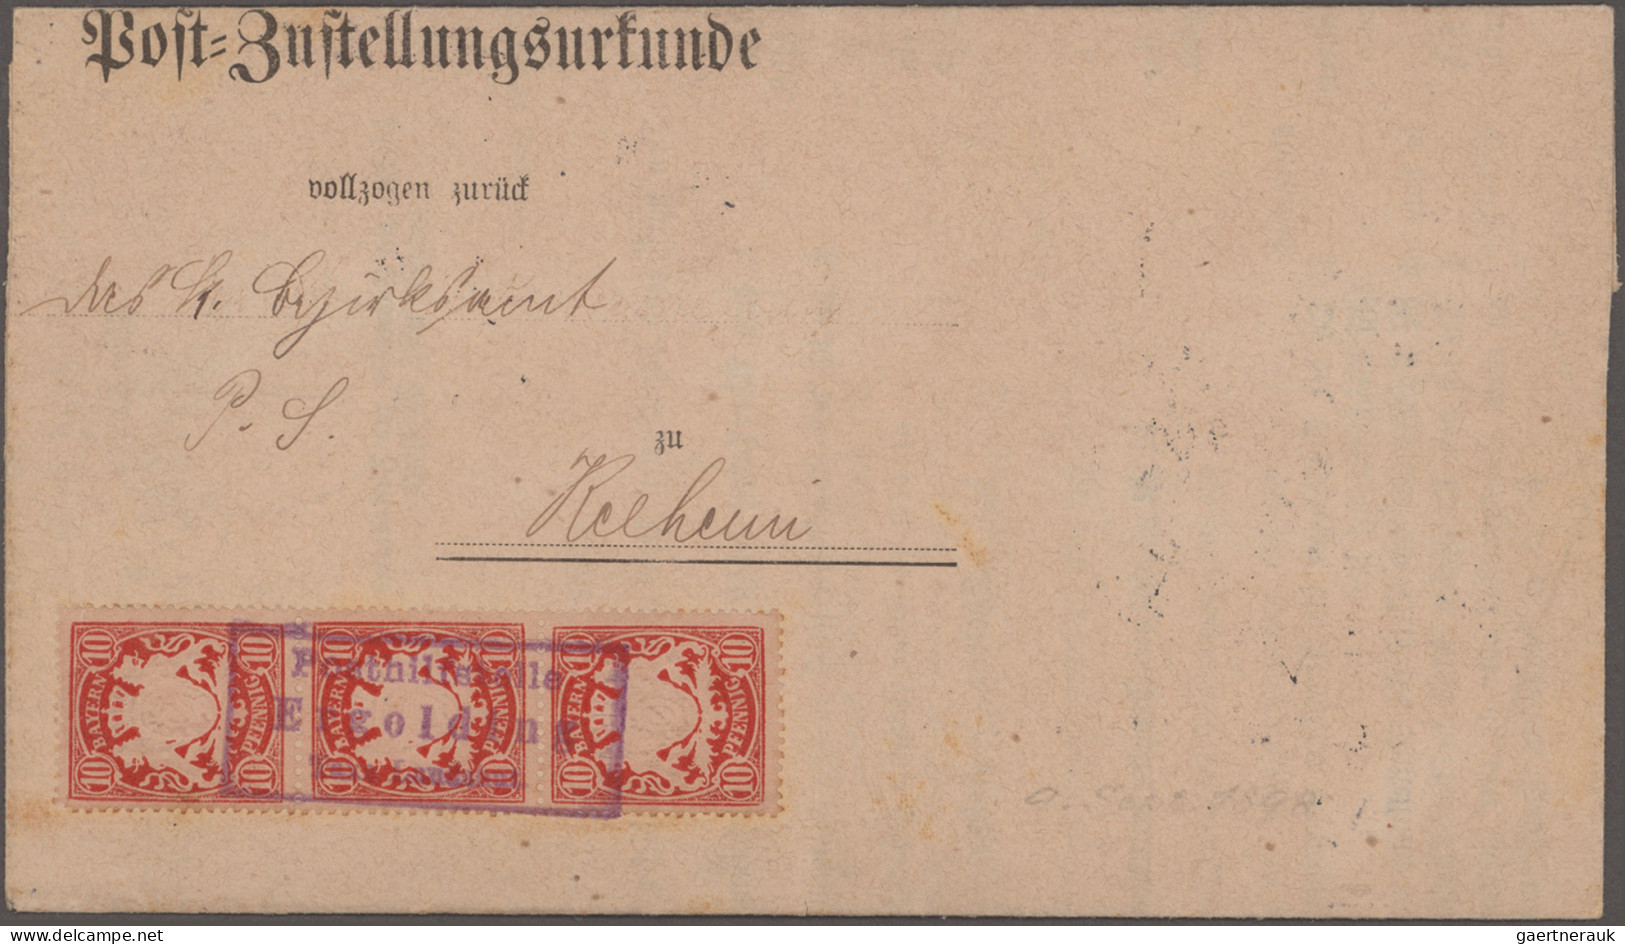 Bayern - Marken und Briefe: 1875/1919, Postzustellungsurkunden, umfangreiche und